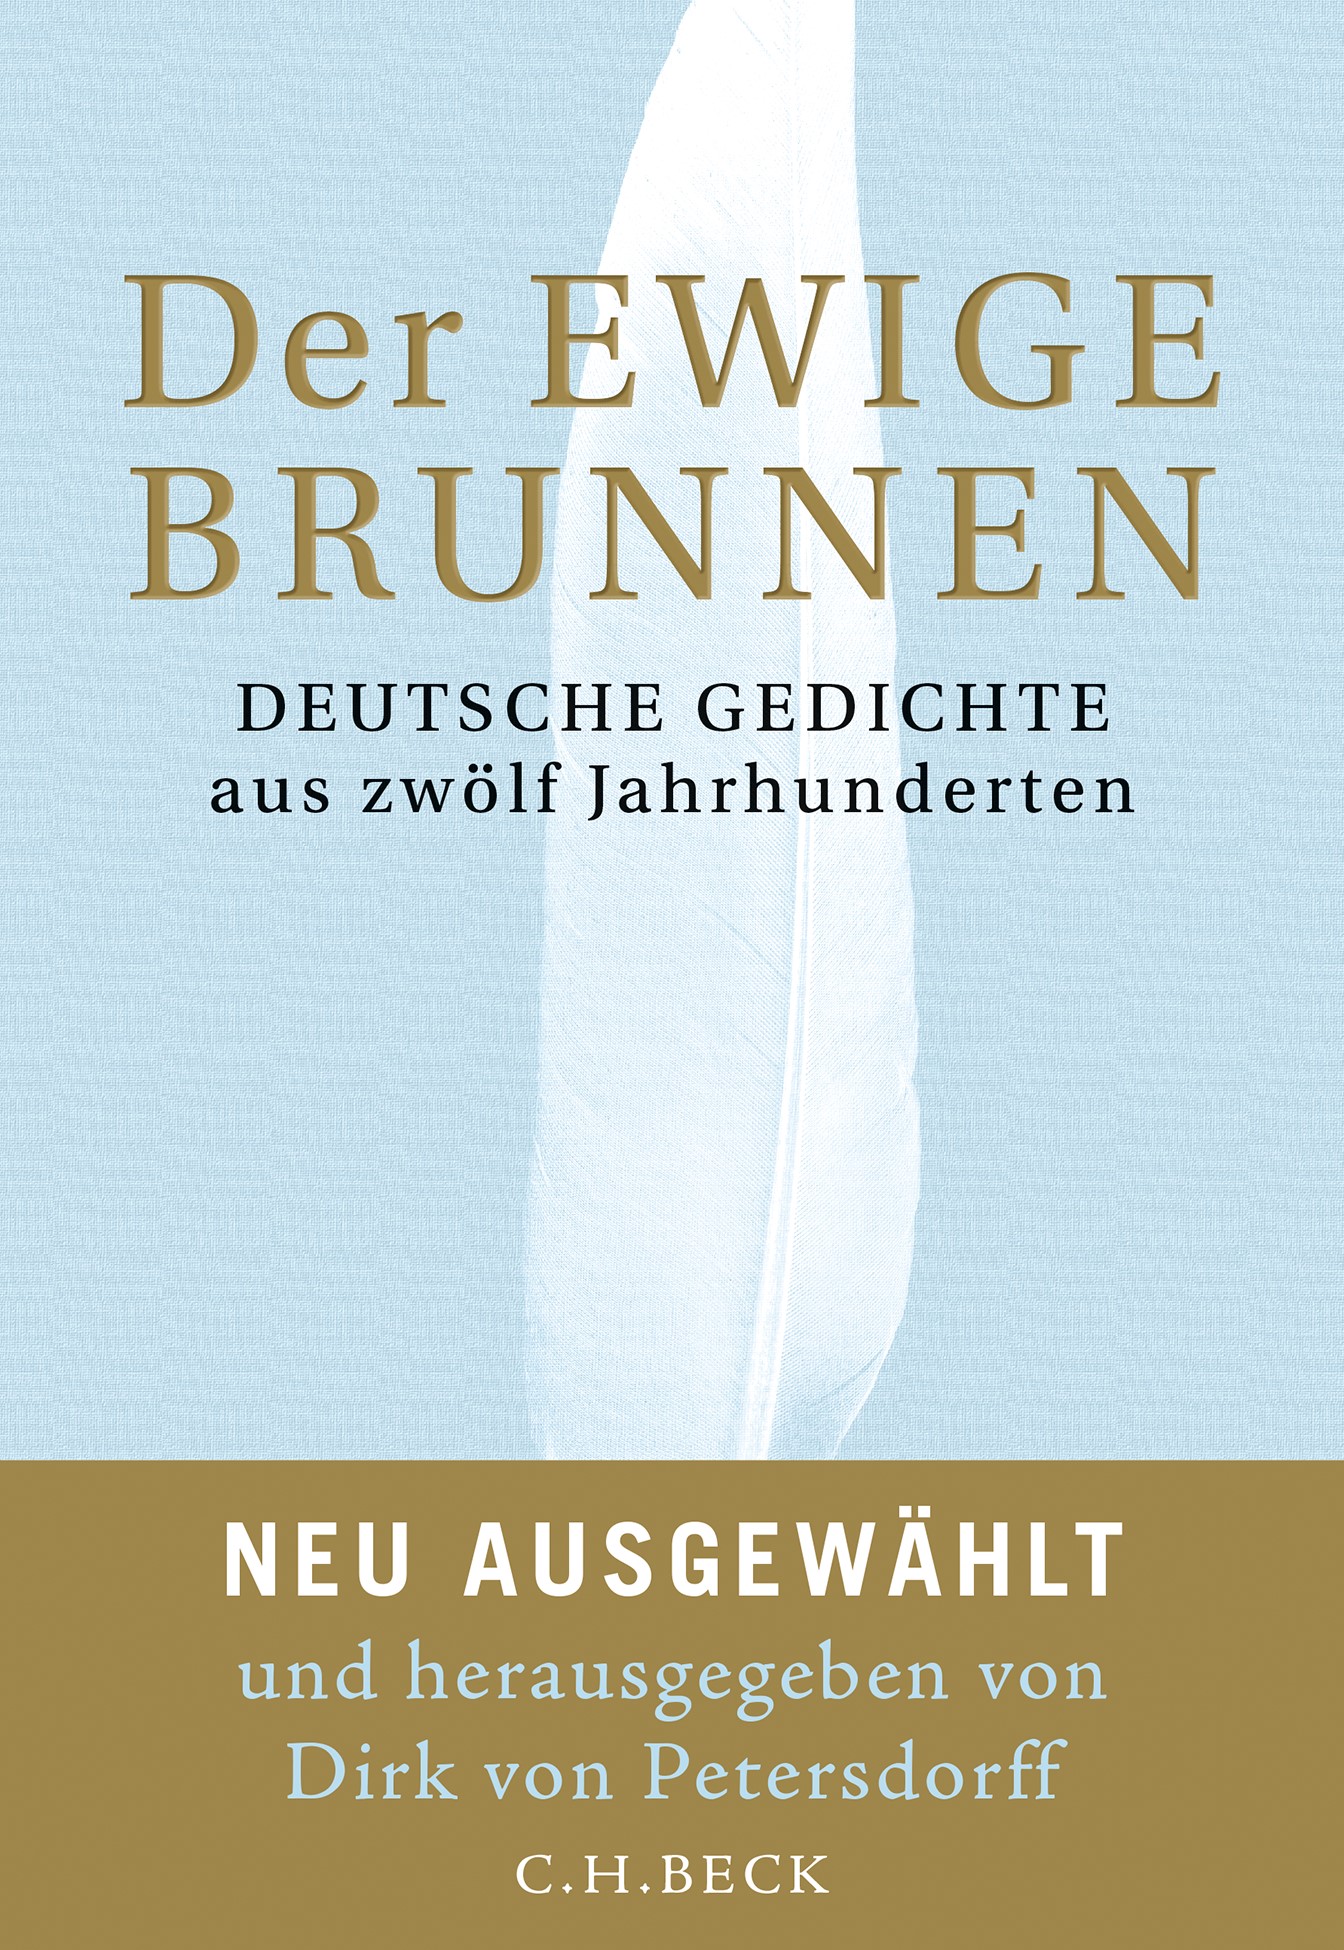 Cover: Petersdorff, Dirk von, Der ewige Brunnen